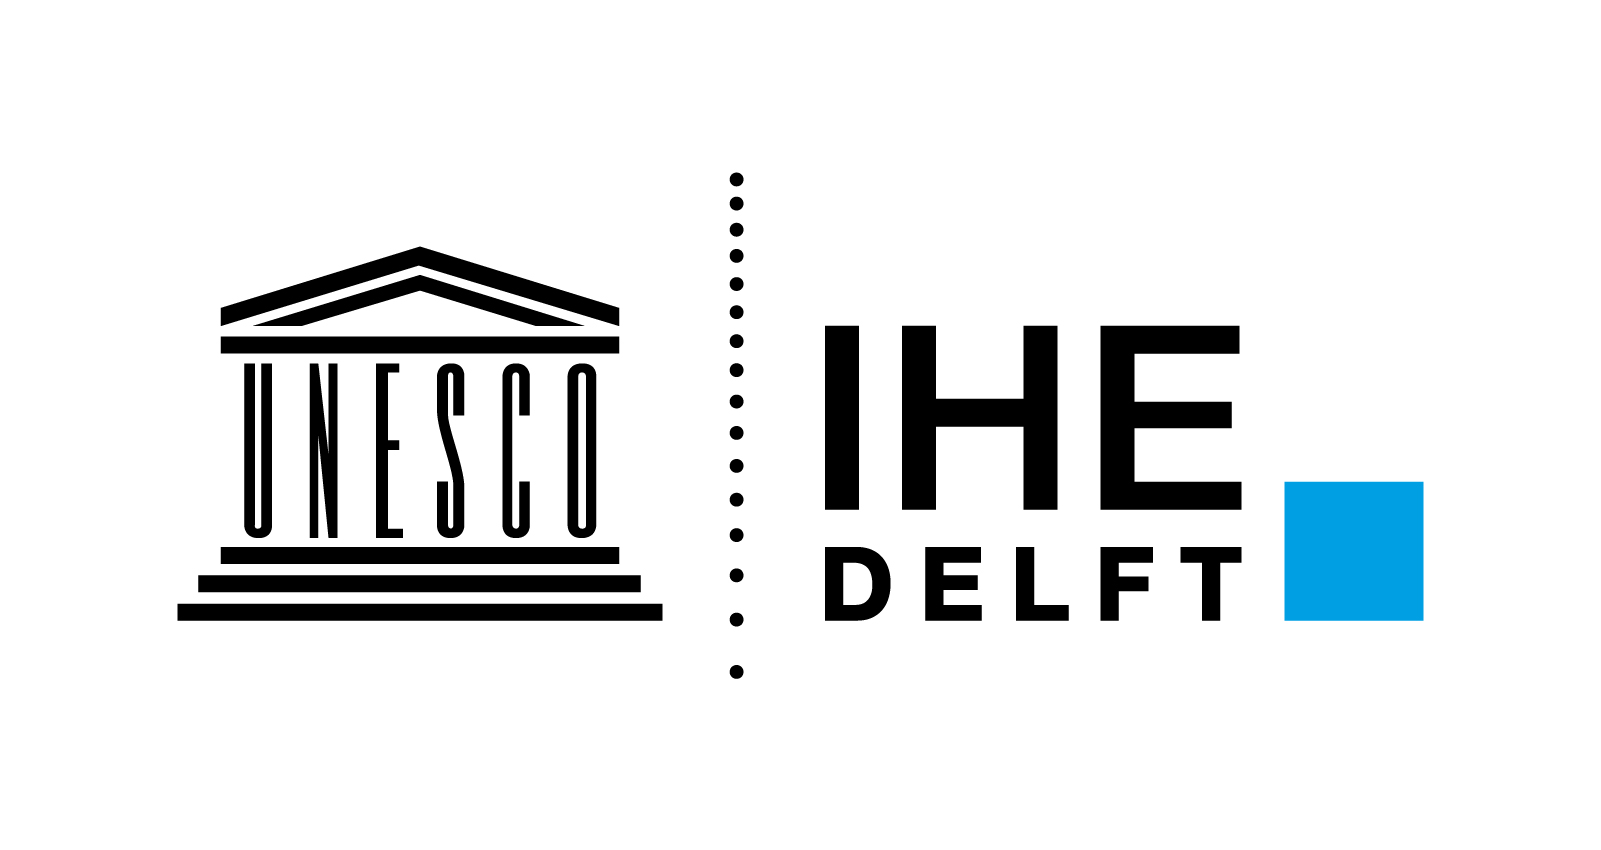 IHE-Delft logo